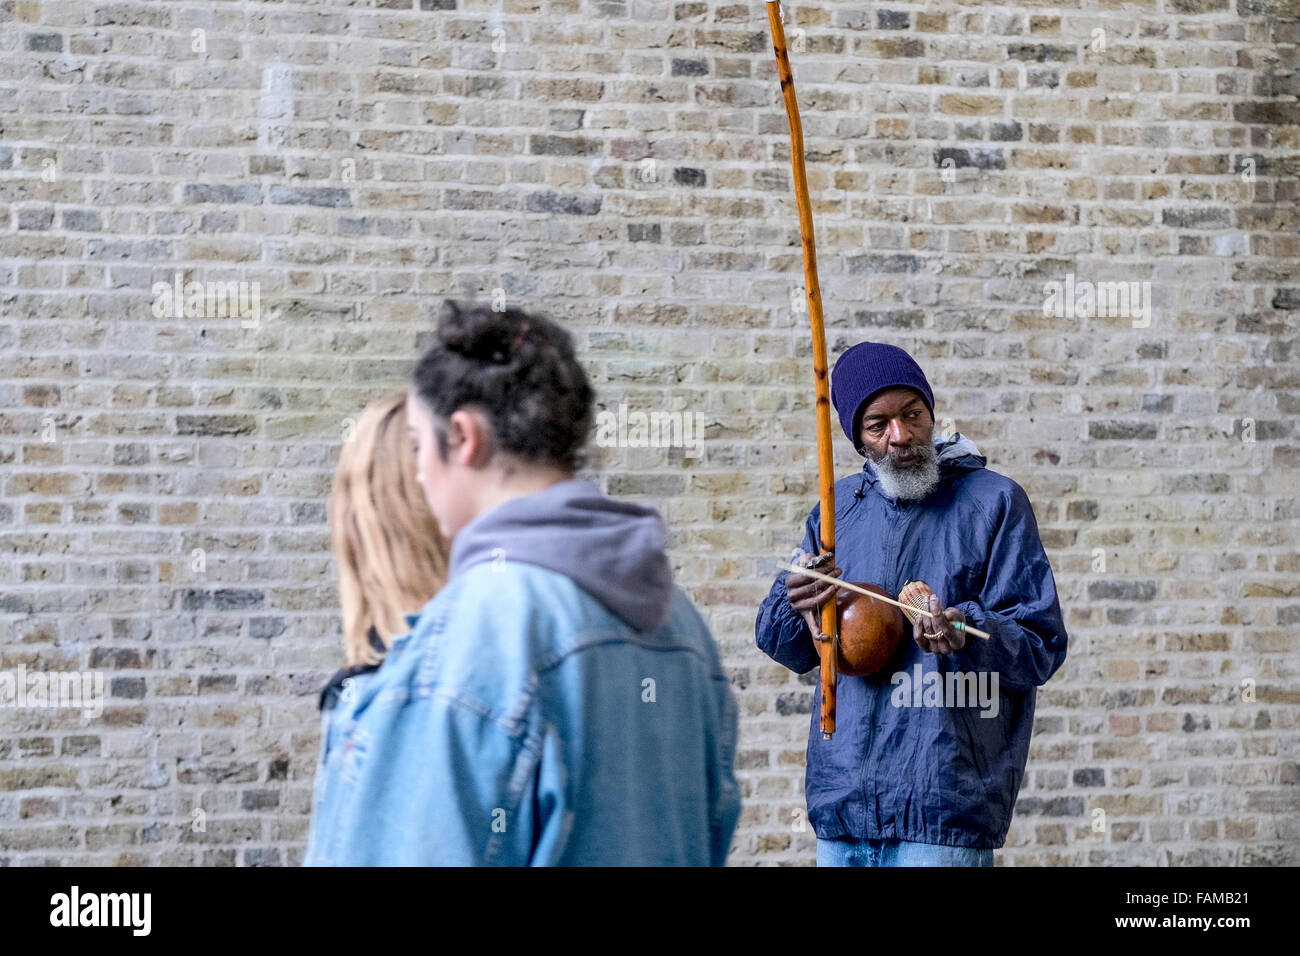 Rabimsha spielt auf der South Bank in London einen Straßenmusiker Berimbau, einem traditionellen afrikanischen/brasilianisches Instrument. Stockfoto